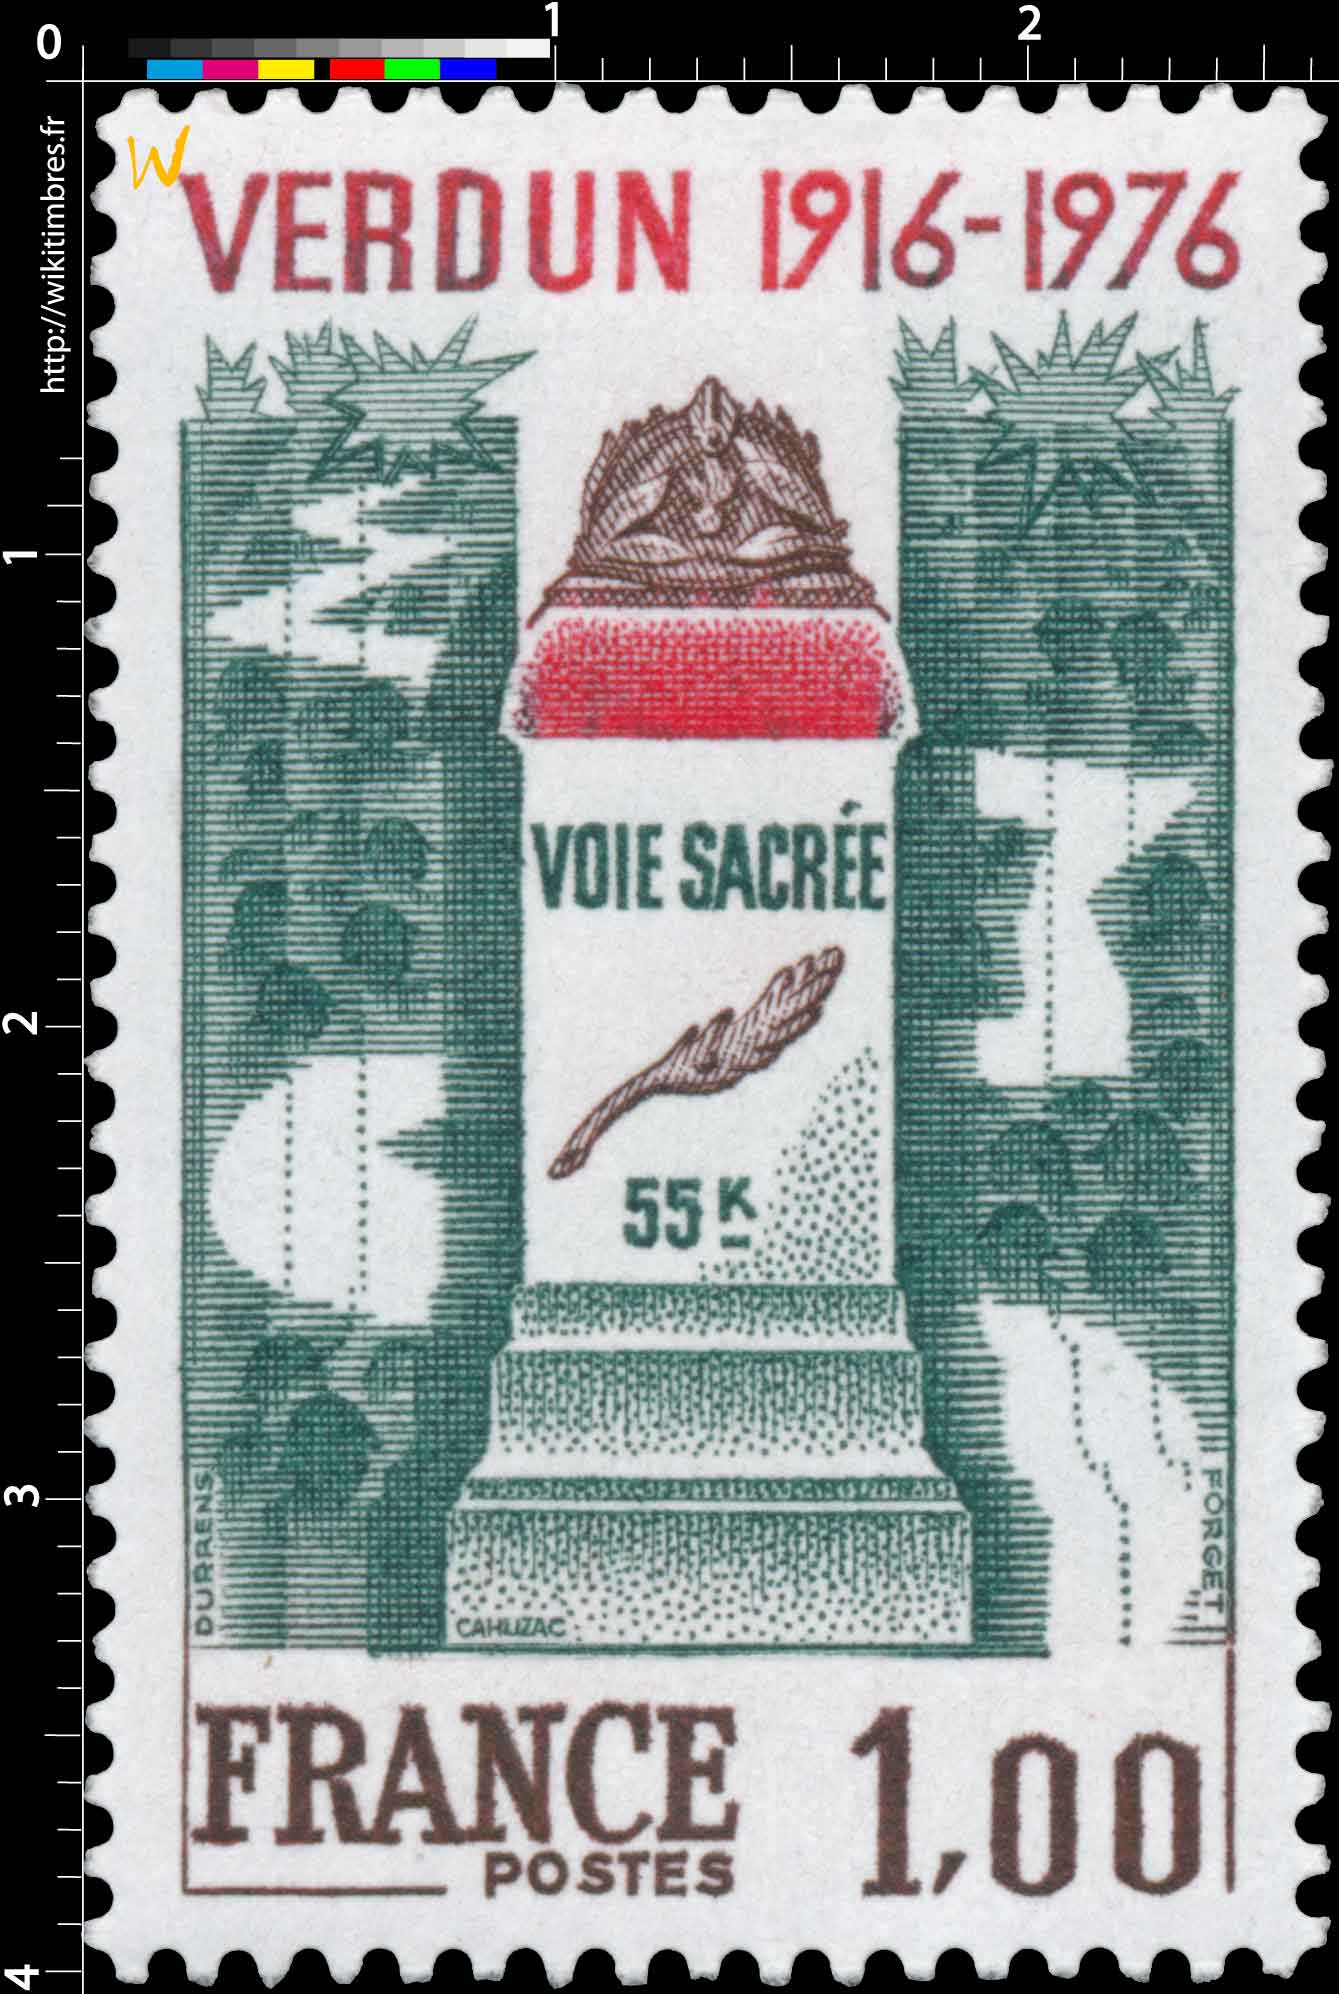 VERDUN 1916-1976 VOIE SACRÉE 55K